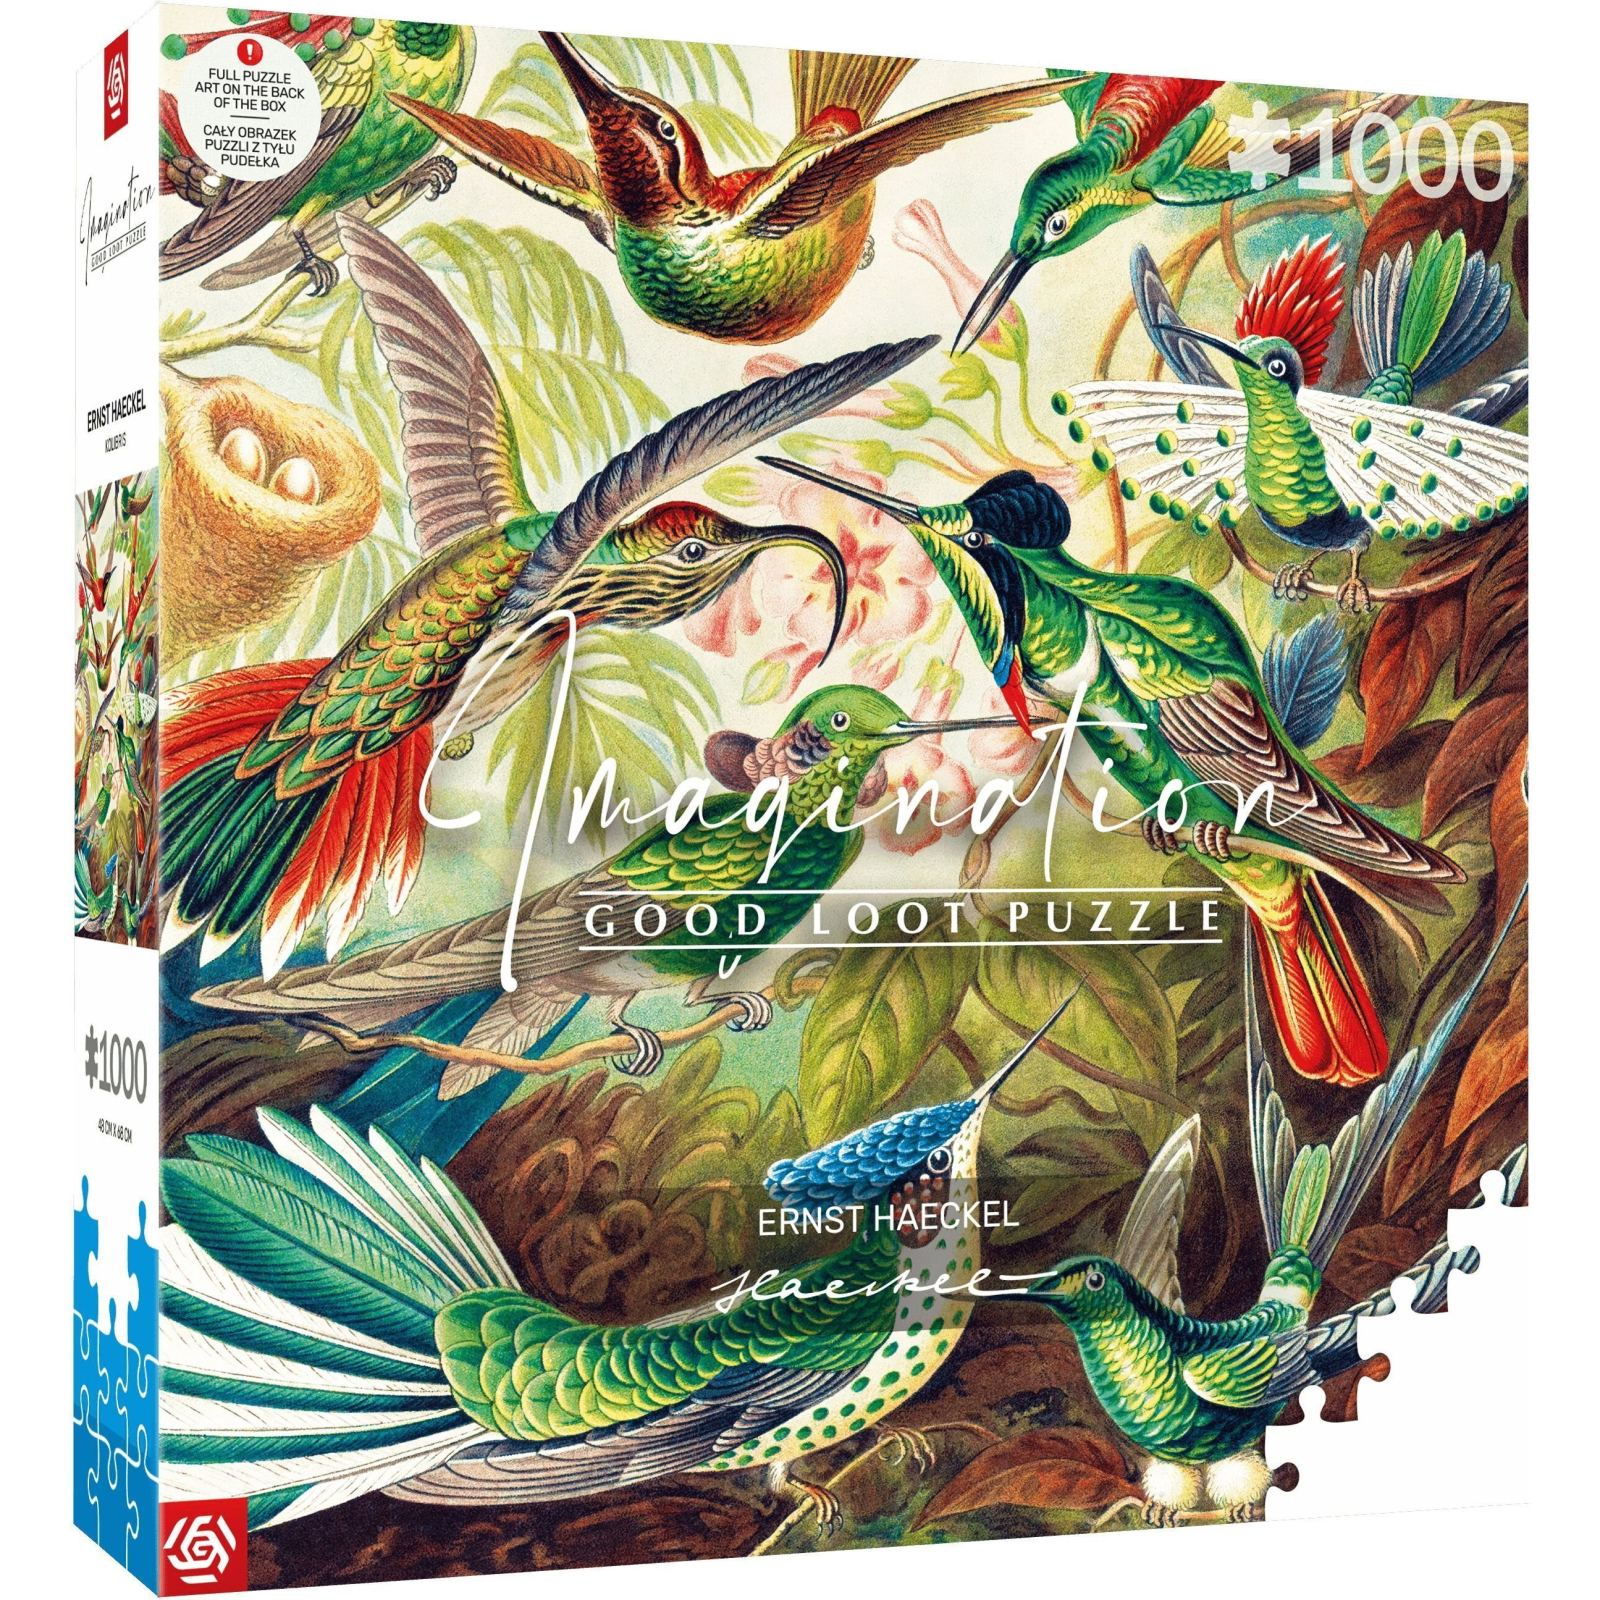 Пазл GoodLoot Imagination: Ernst Haeckel Hummingbirds/Kolibry 1000 элементов (5908305246794)